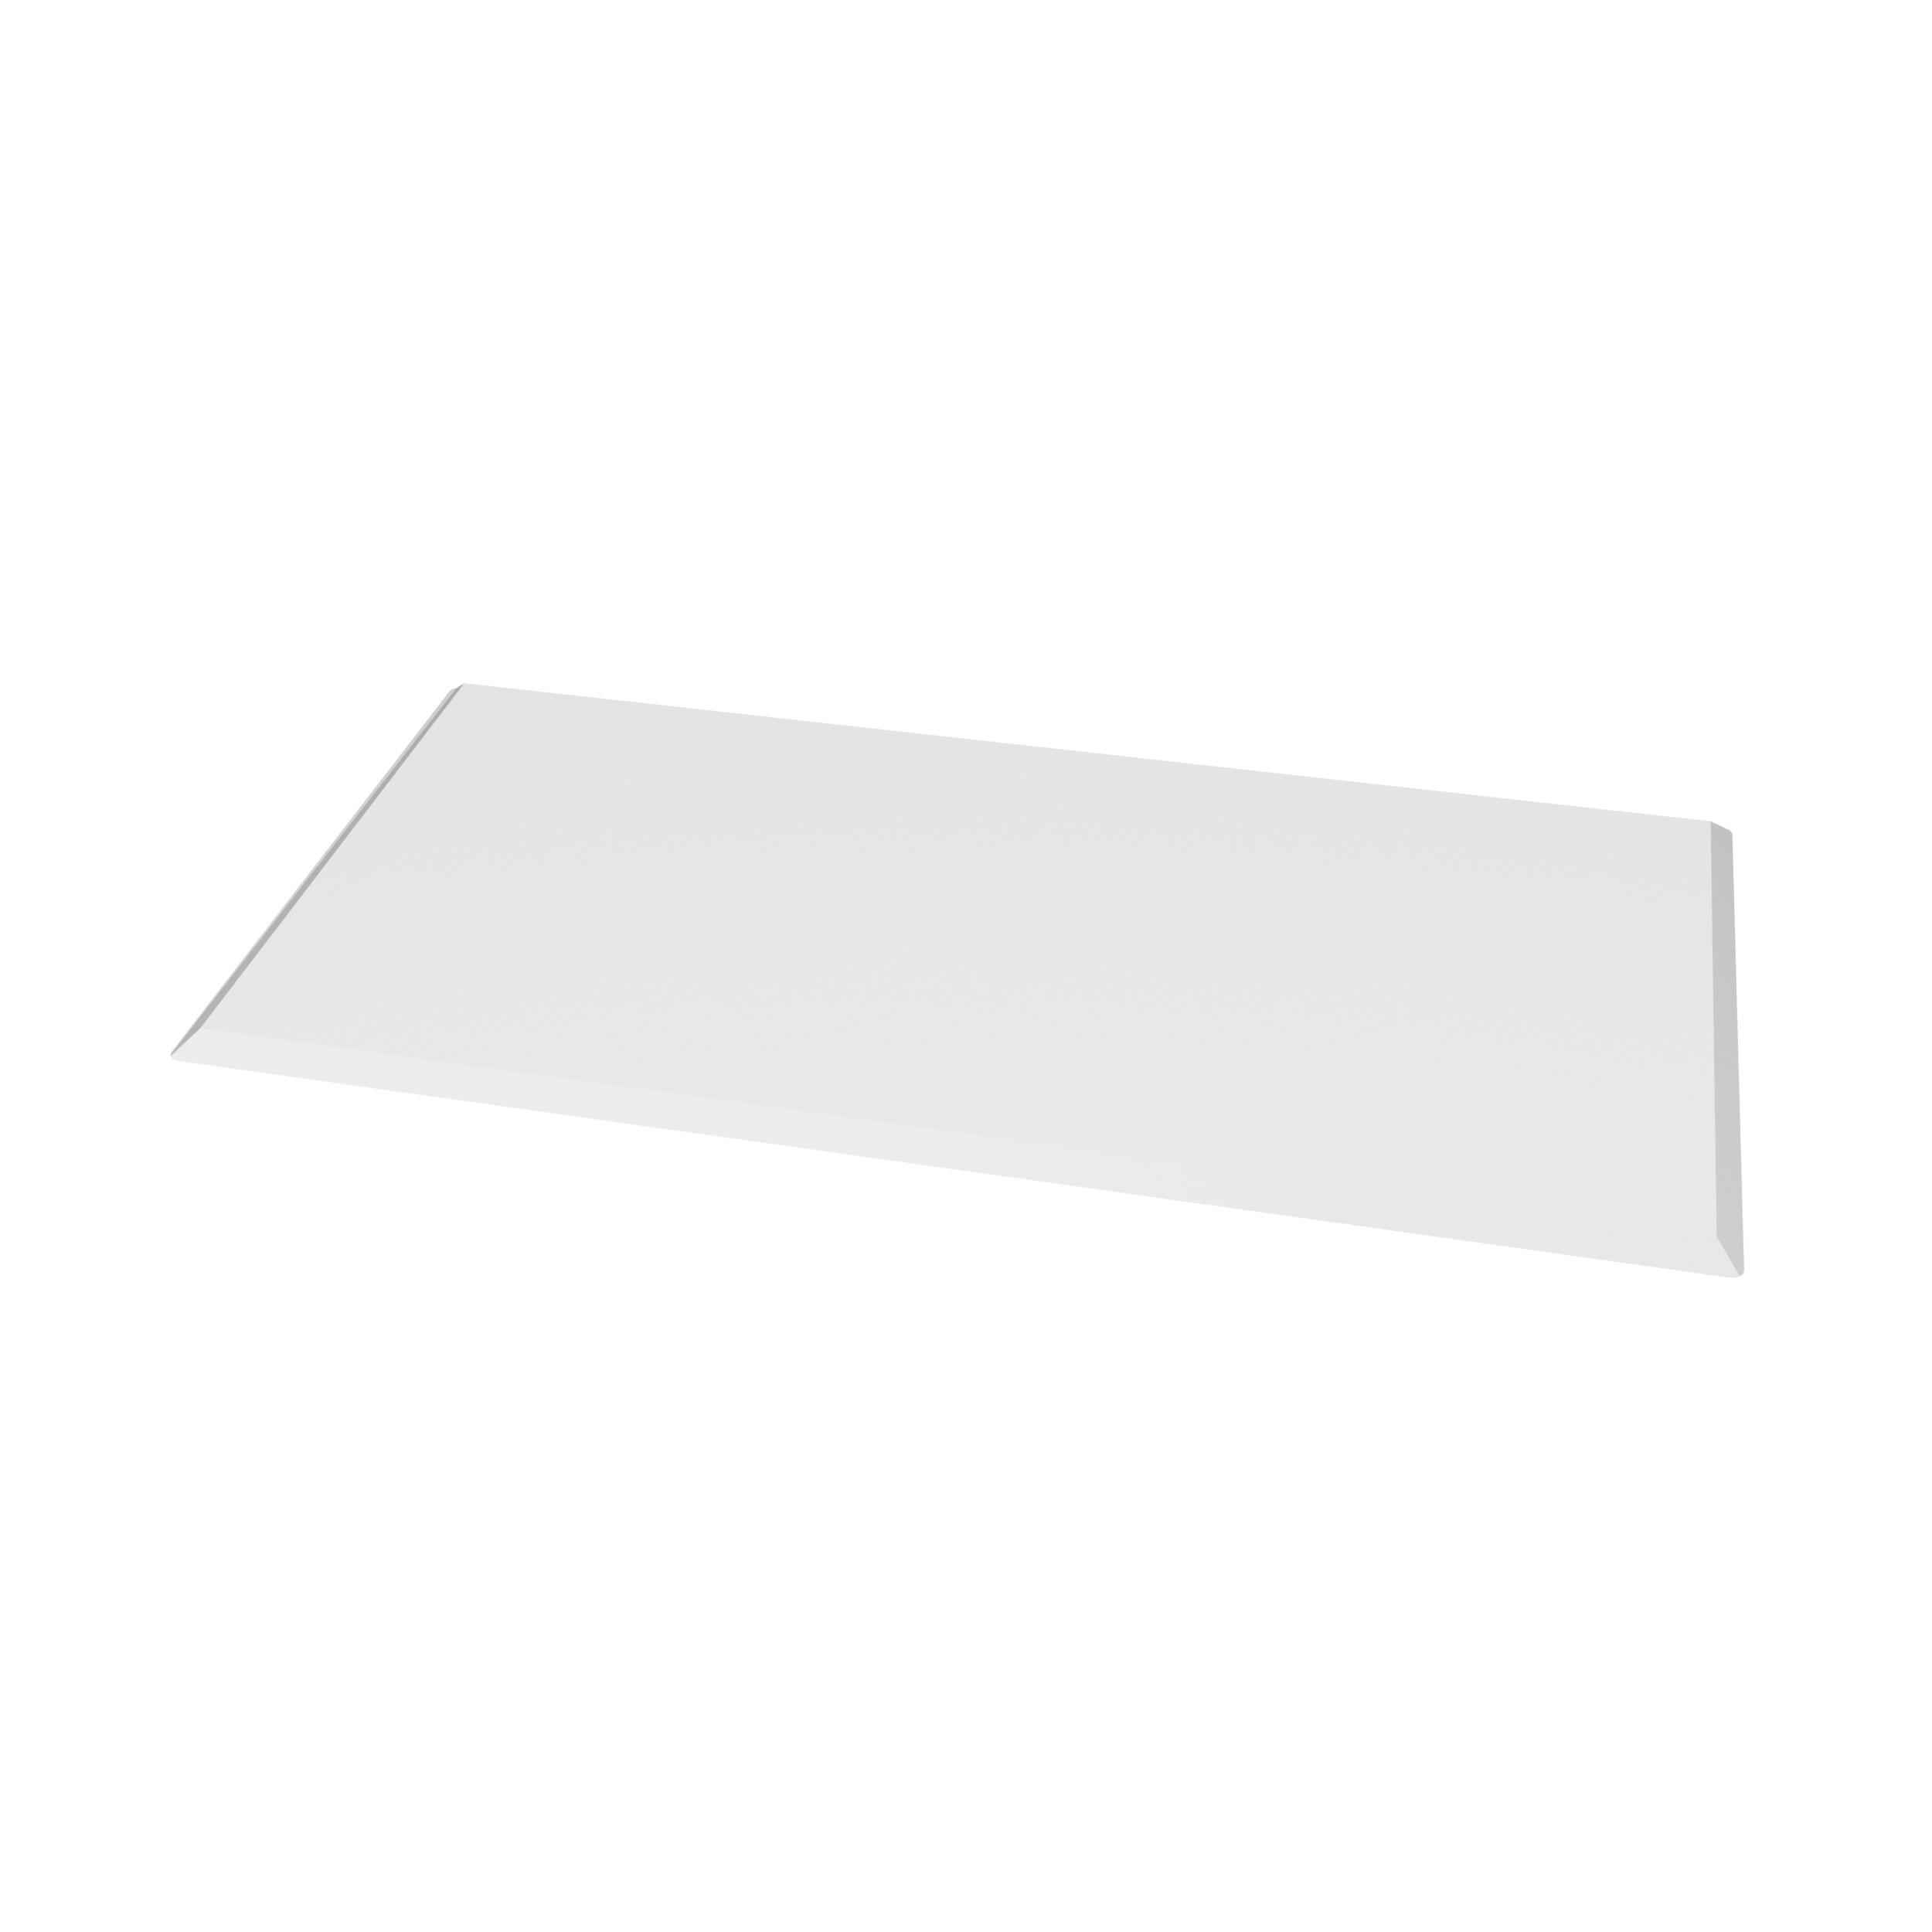 Valo Glasvorlegeplatte Eckig 100 x 55 cm; glasklar; 6 mm; mit geschliffenen Kanten